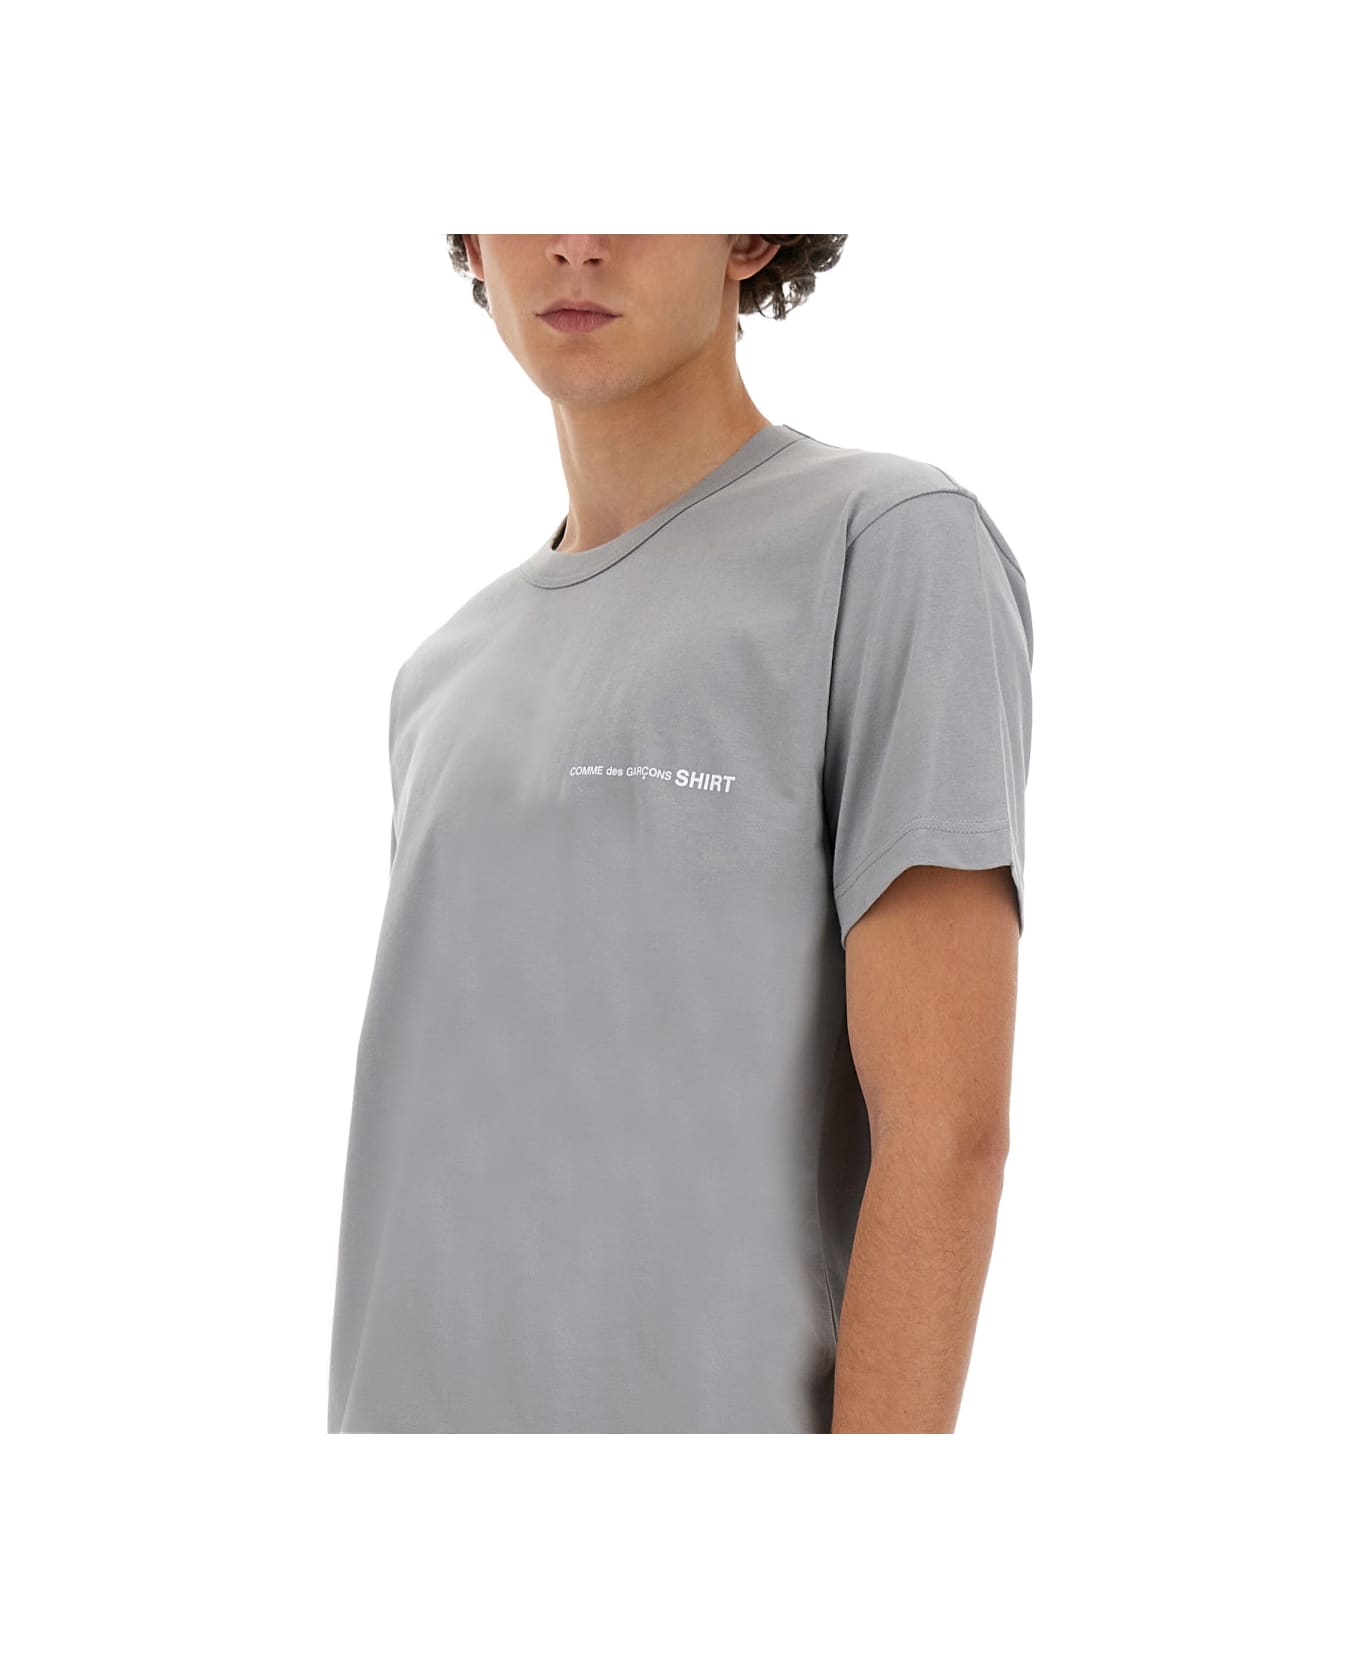 Comme des Garçons Shirt Jersey T-shirt T-Shirt - GREY シャツ